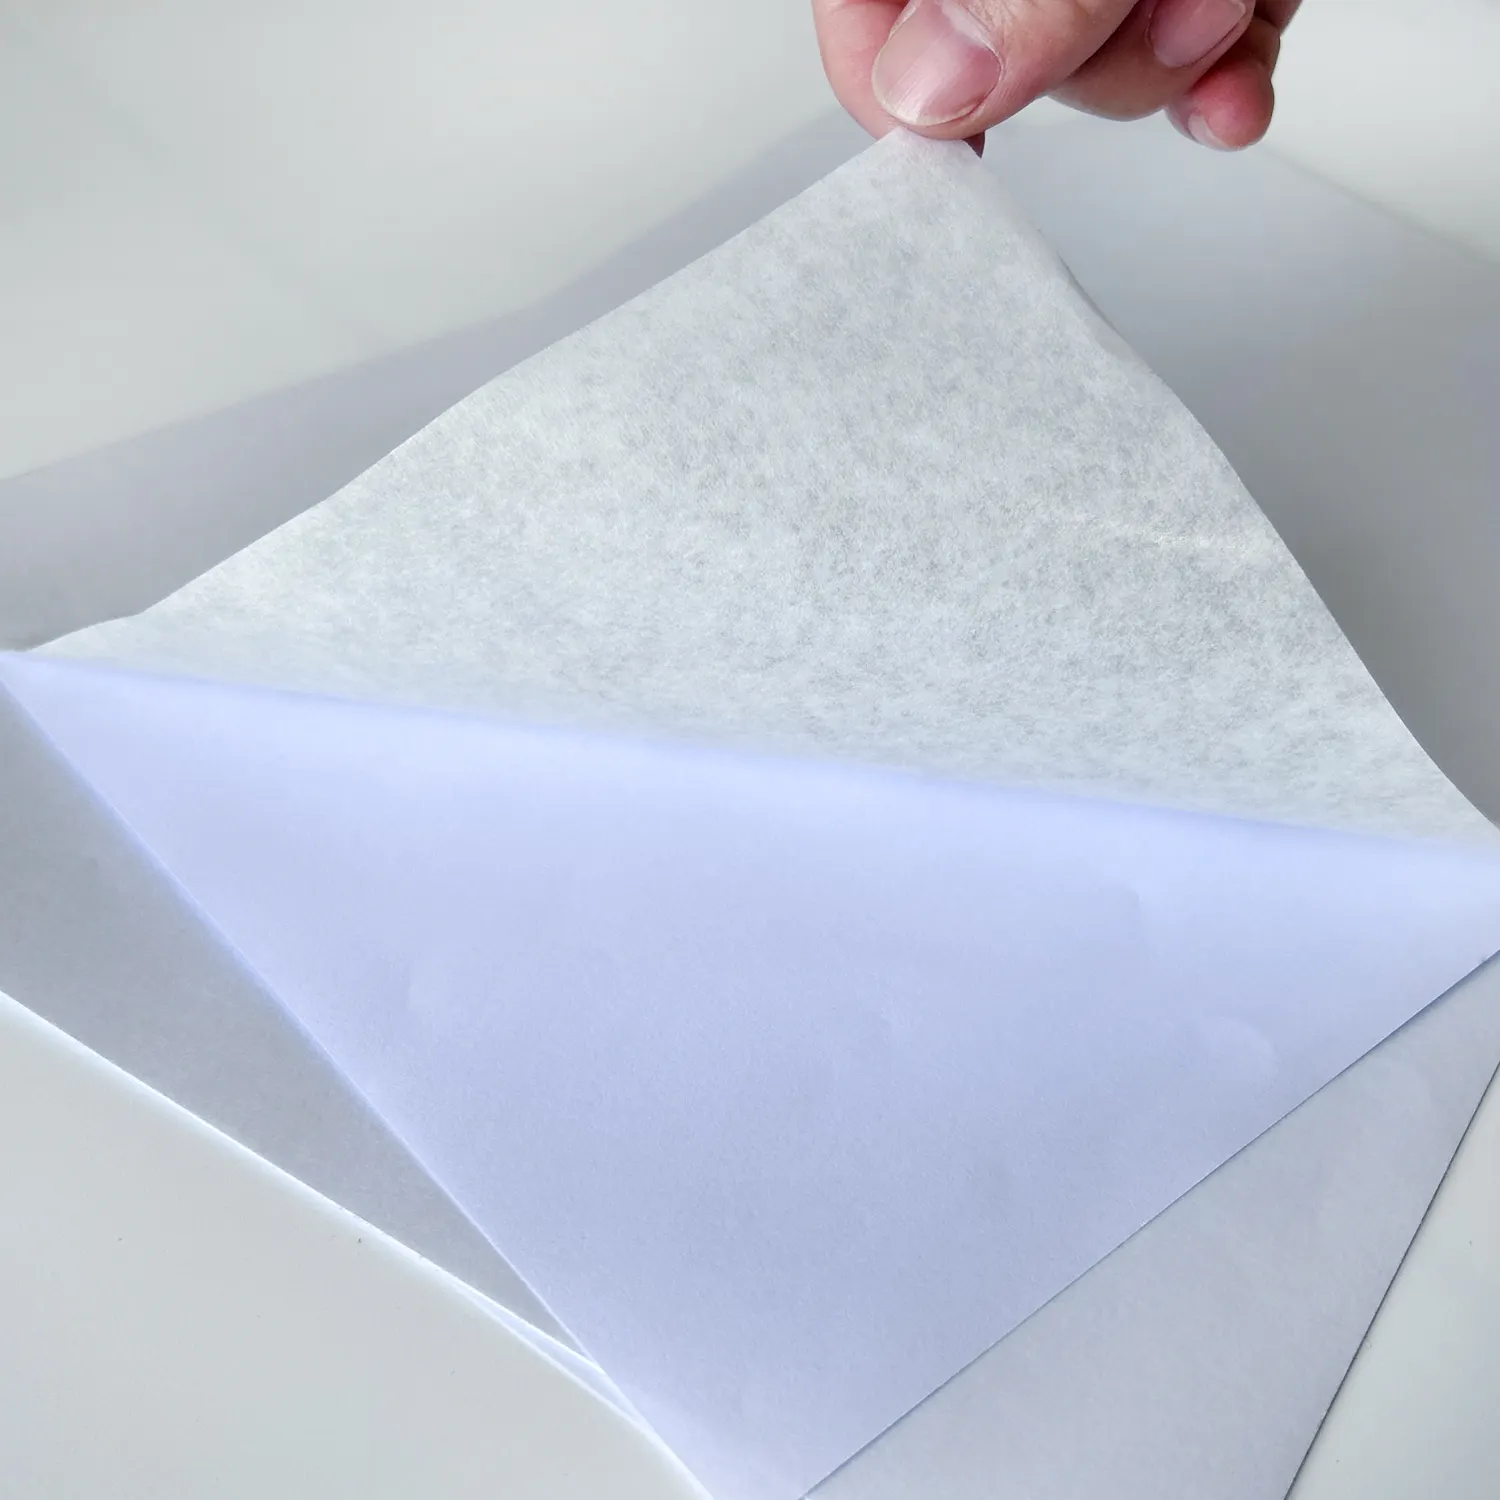 Премиум Водонепроницаемая самоклеющаяся листовой пластик для струйной печати японский A4 клейкие ленты без рисунка, Стикеры для покрытия зеркала для струйной печати и лазерного принтера